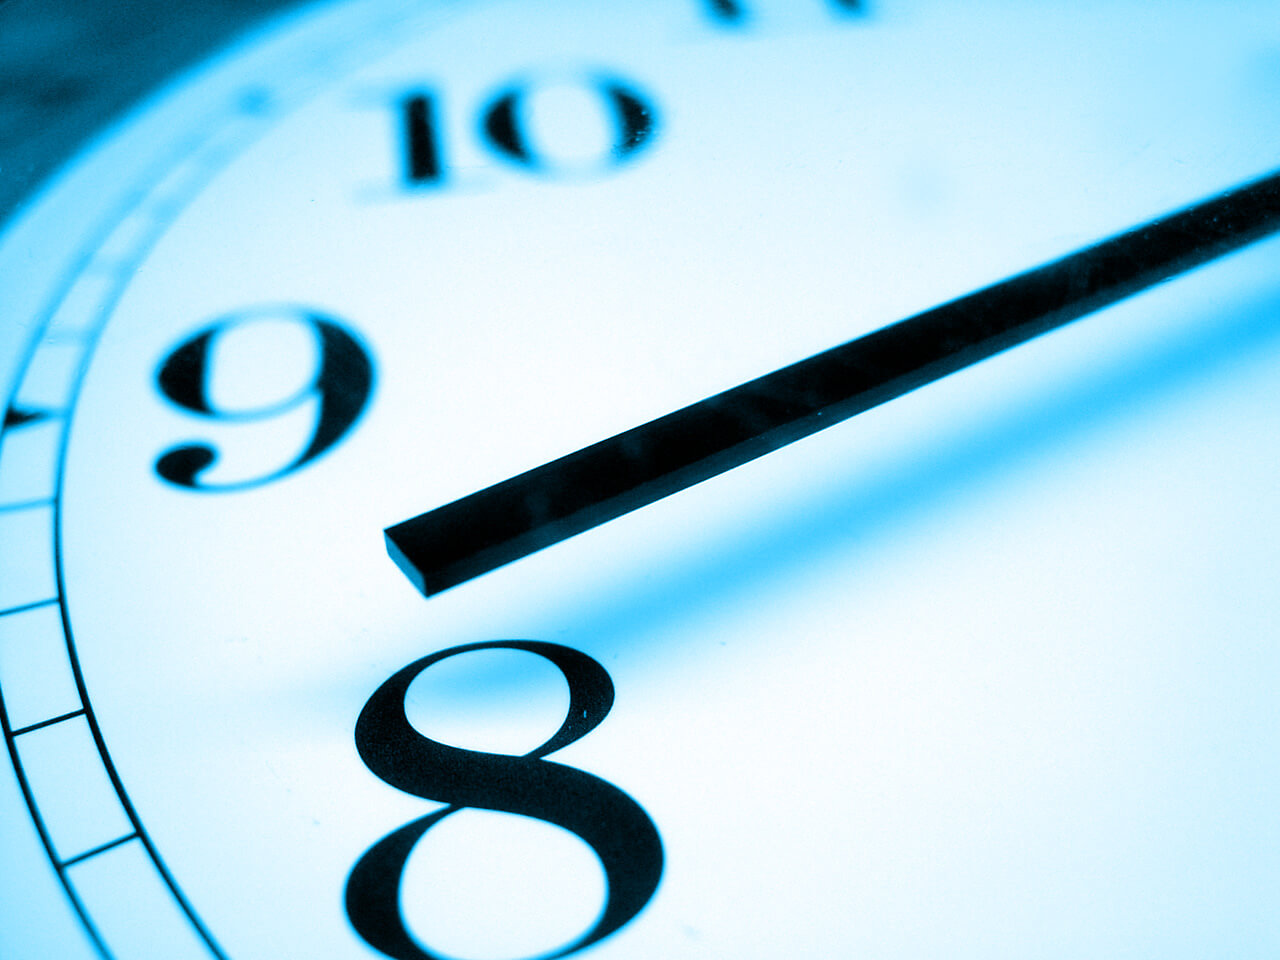 relógio (1) - Gastamos mais tempo com tecnologia do que transando, segundo pesquisa